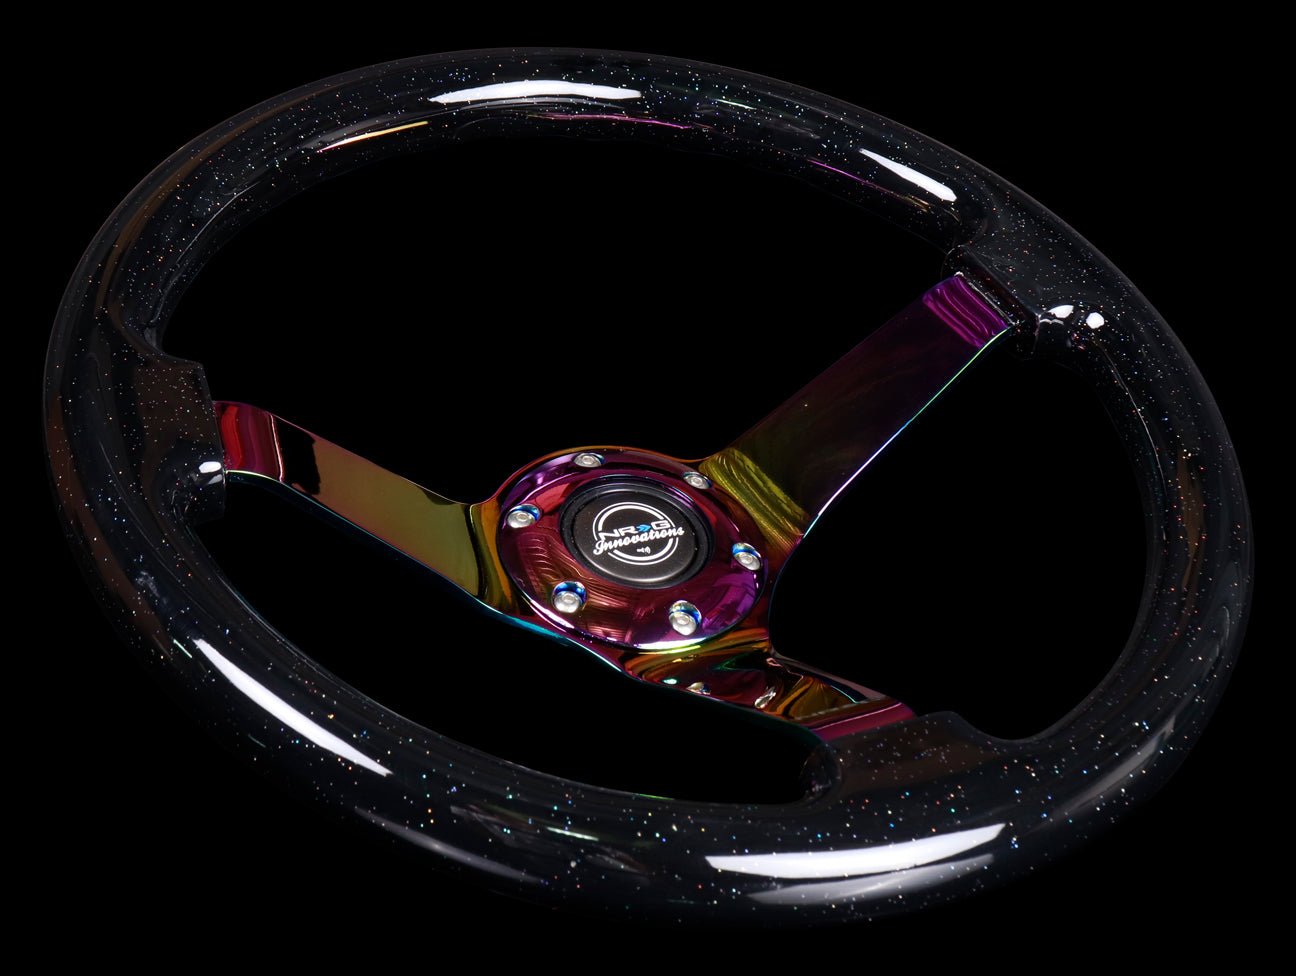 NRG Steering Wheel - 350mm Classic Black Sparkled Woodgrain / Neo Chrome